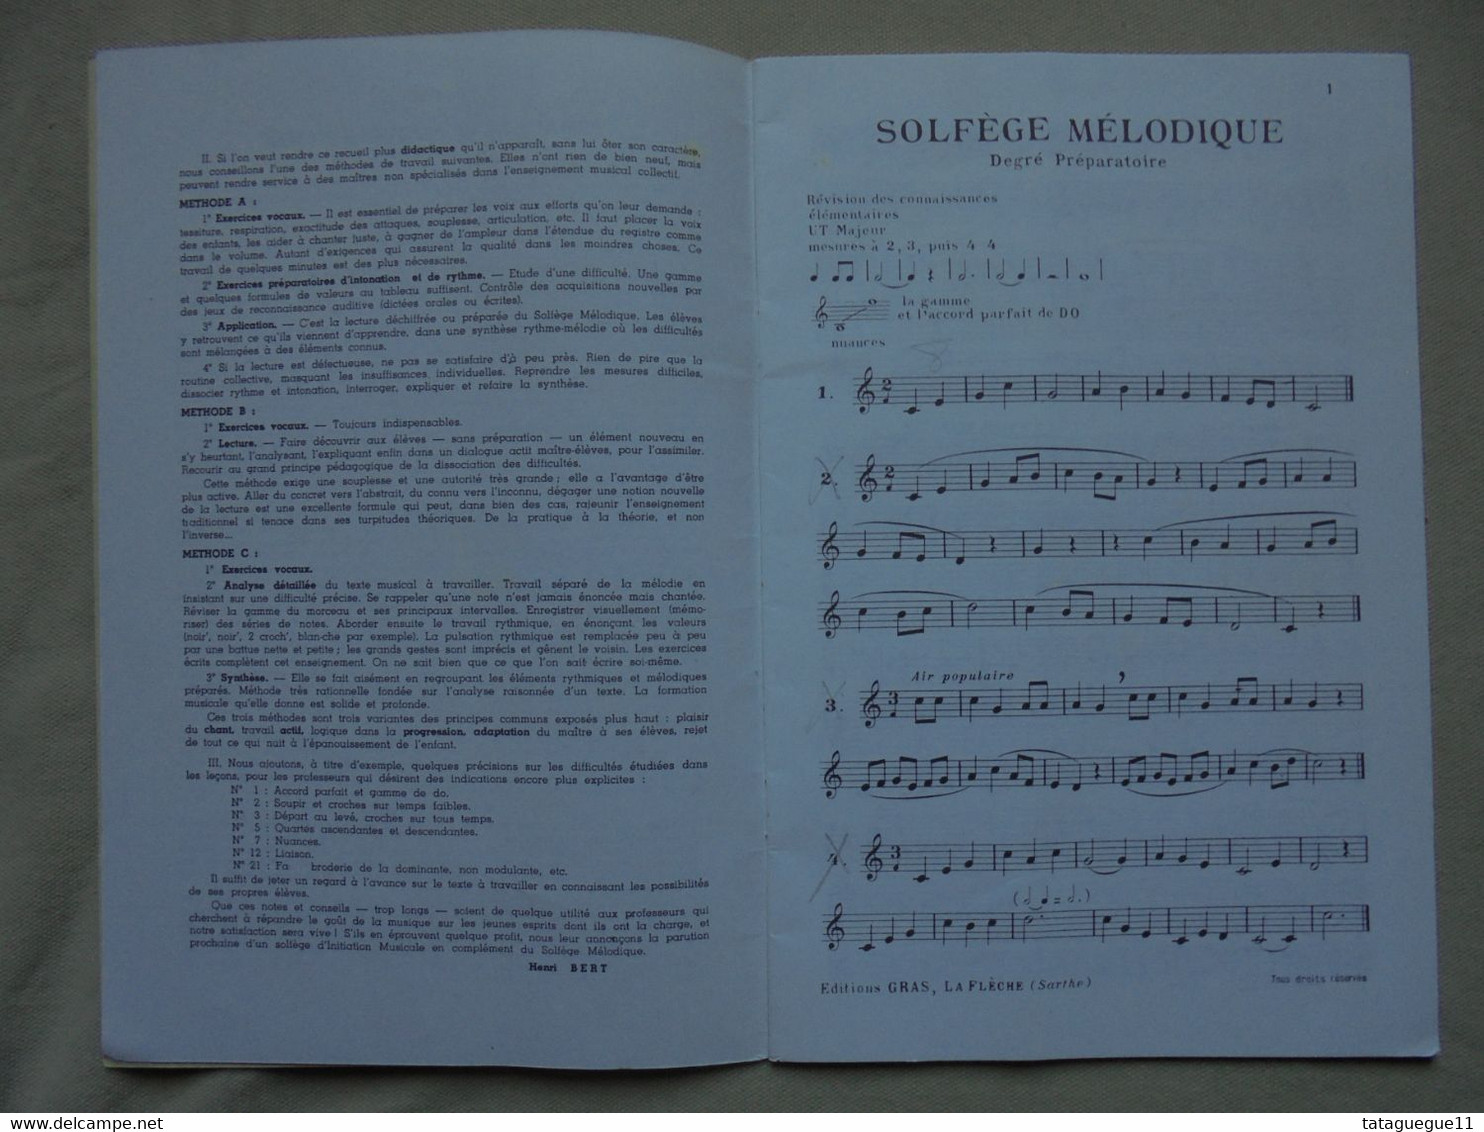 Ancien - Livret Solfège Mélodique 100 Leçons Par Henri Bert Degré Préparatoire - Aprendizaje